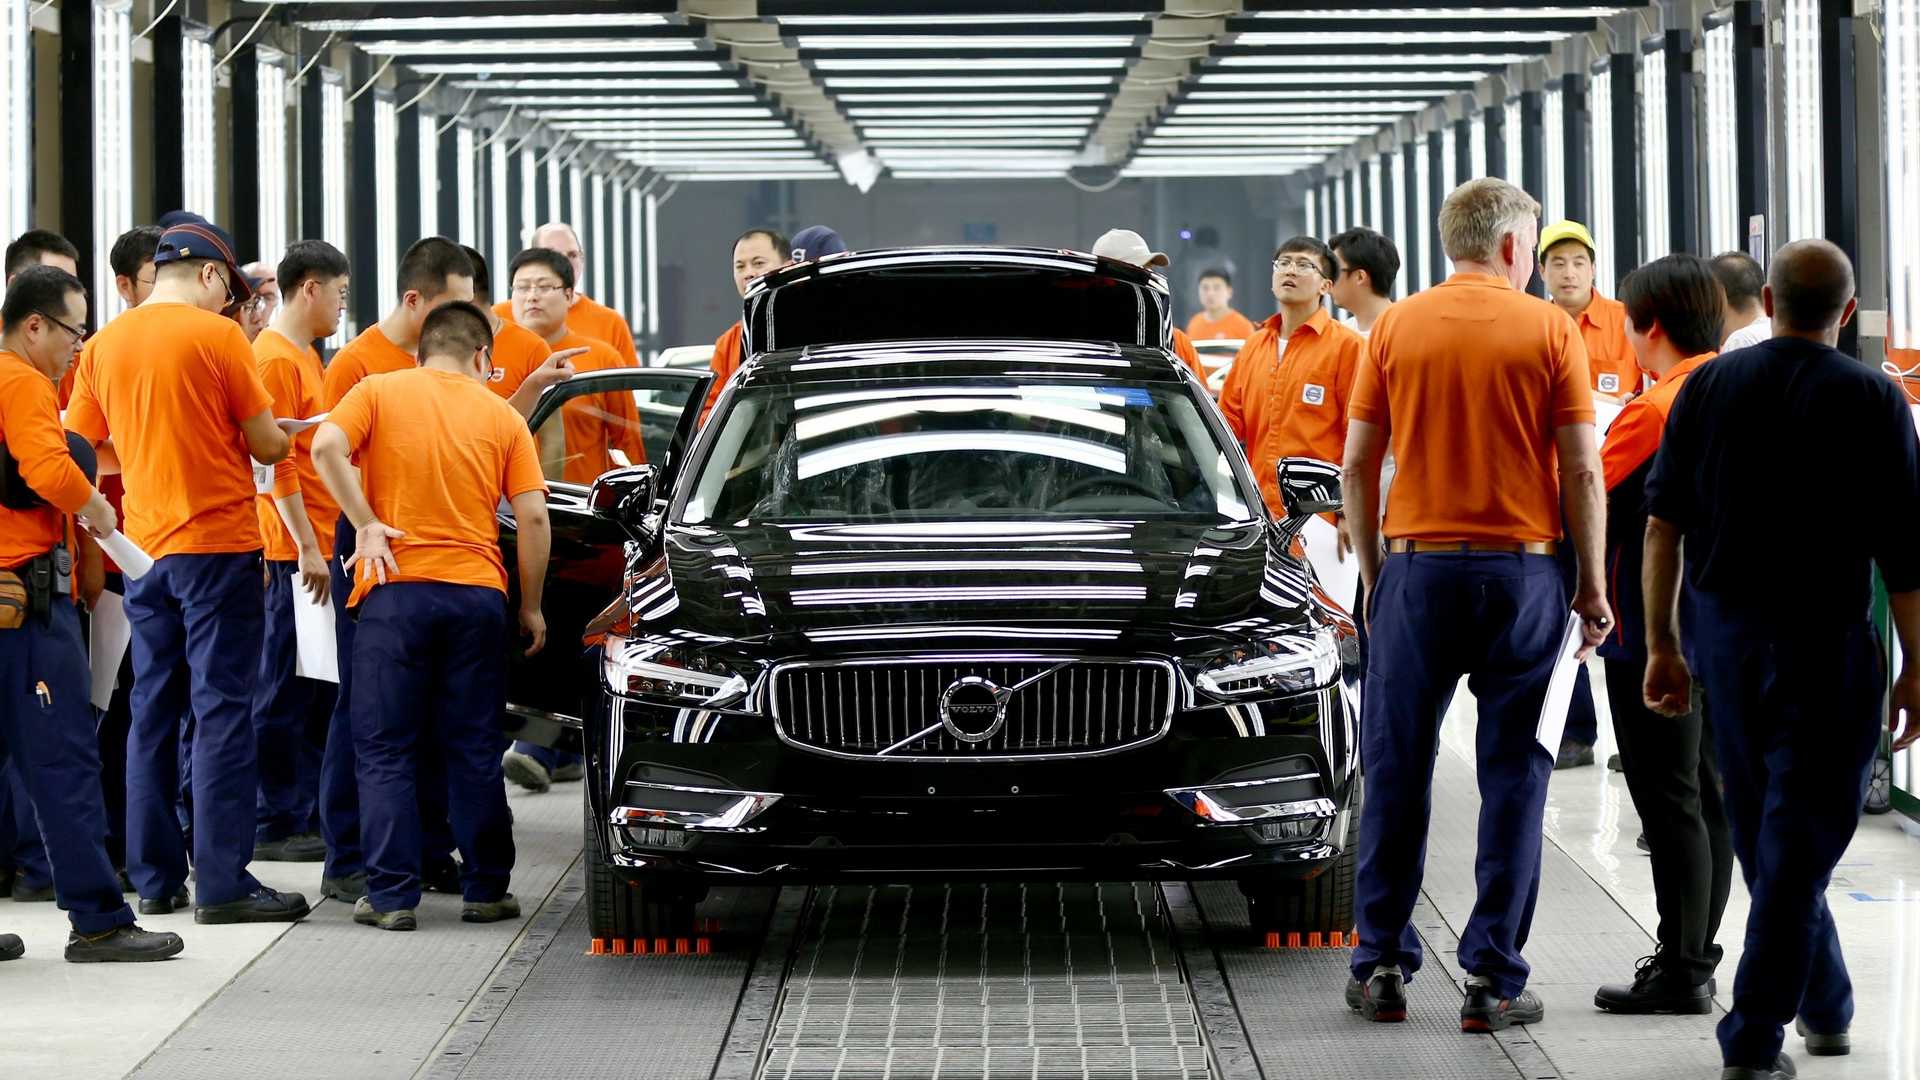 فولفو: جودة صناعة السيارات في الصين أفضل من أوروبا لهذا السبب